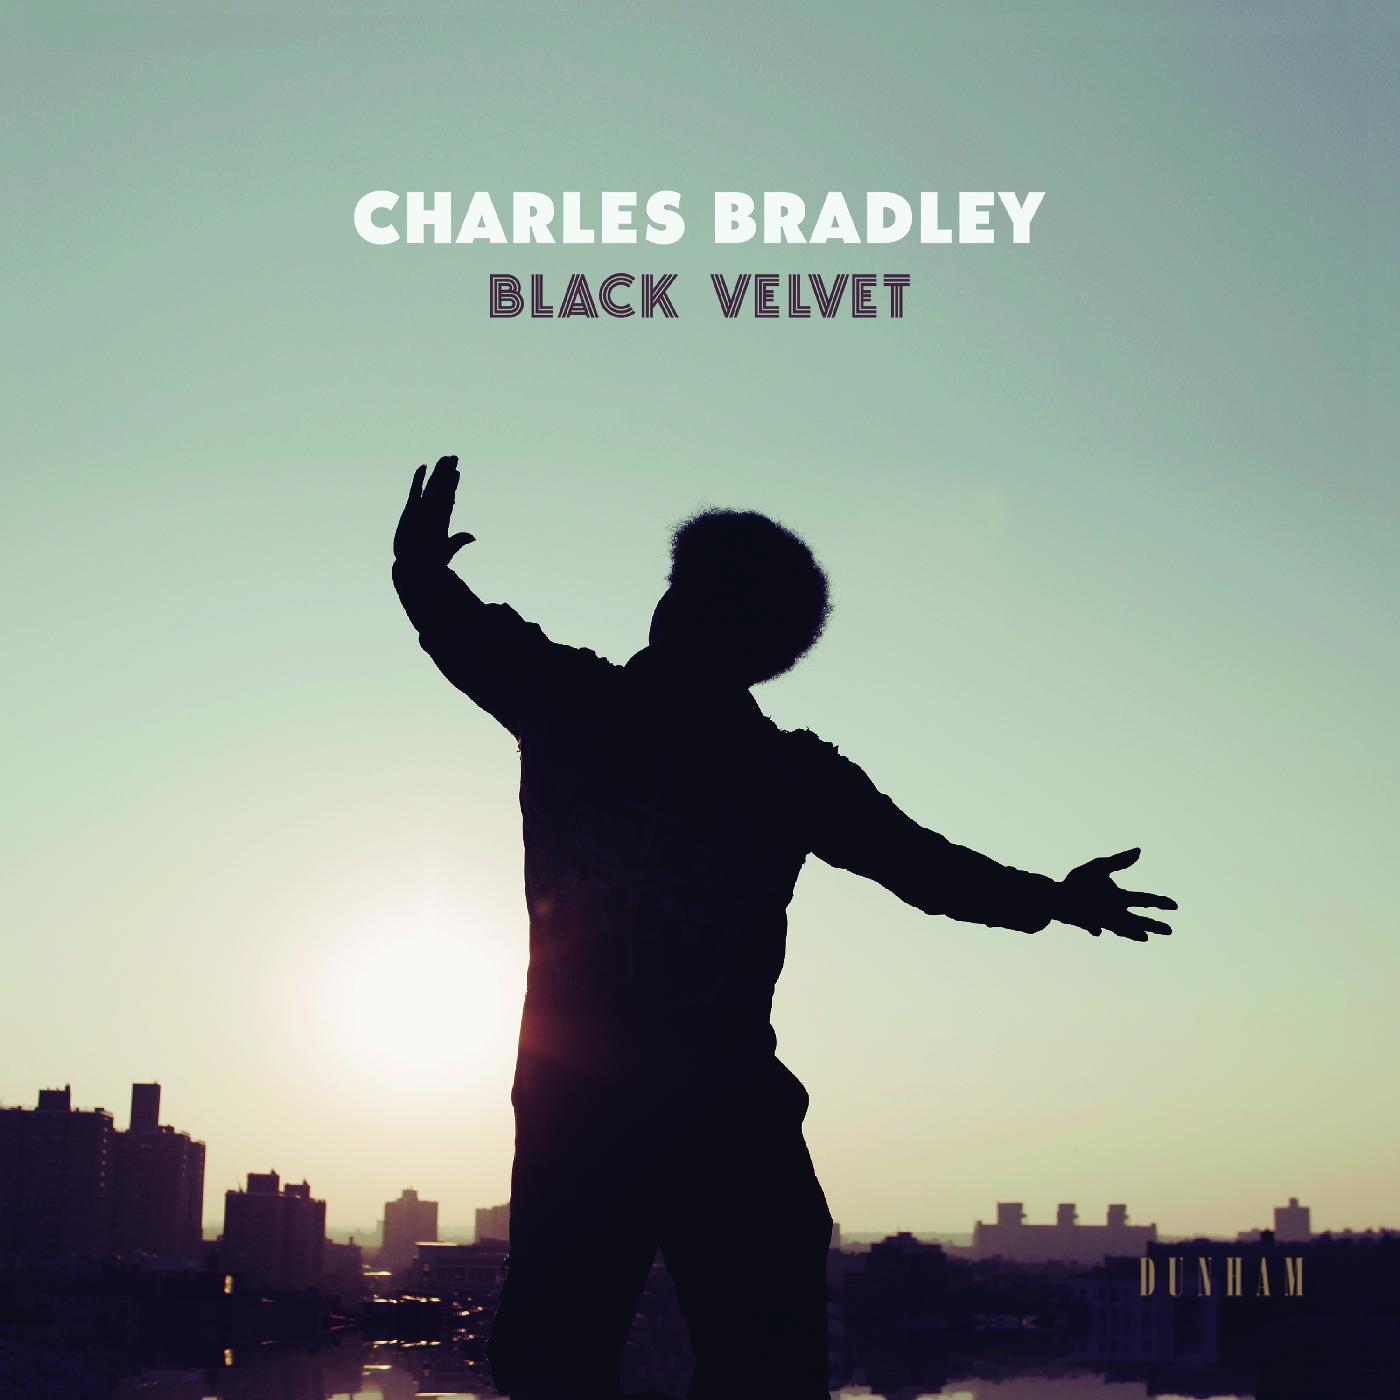 Black Velvet (Vinyl)